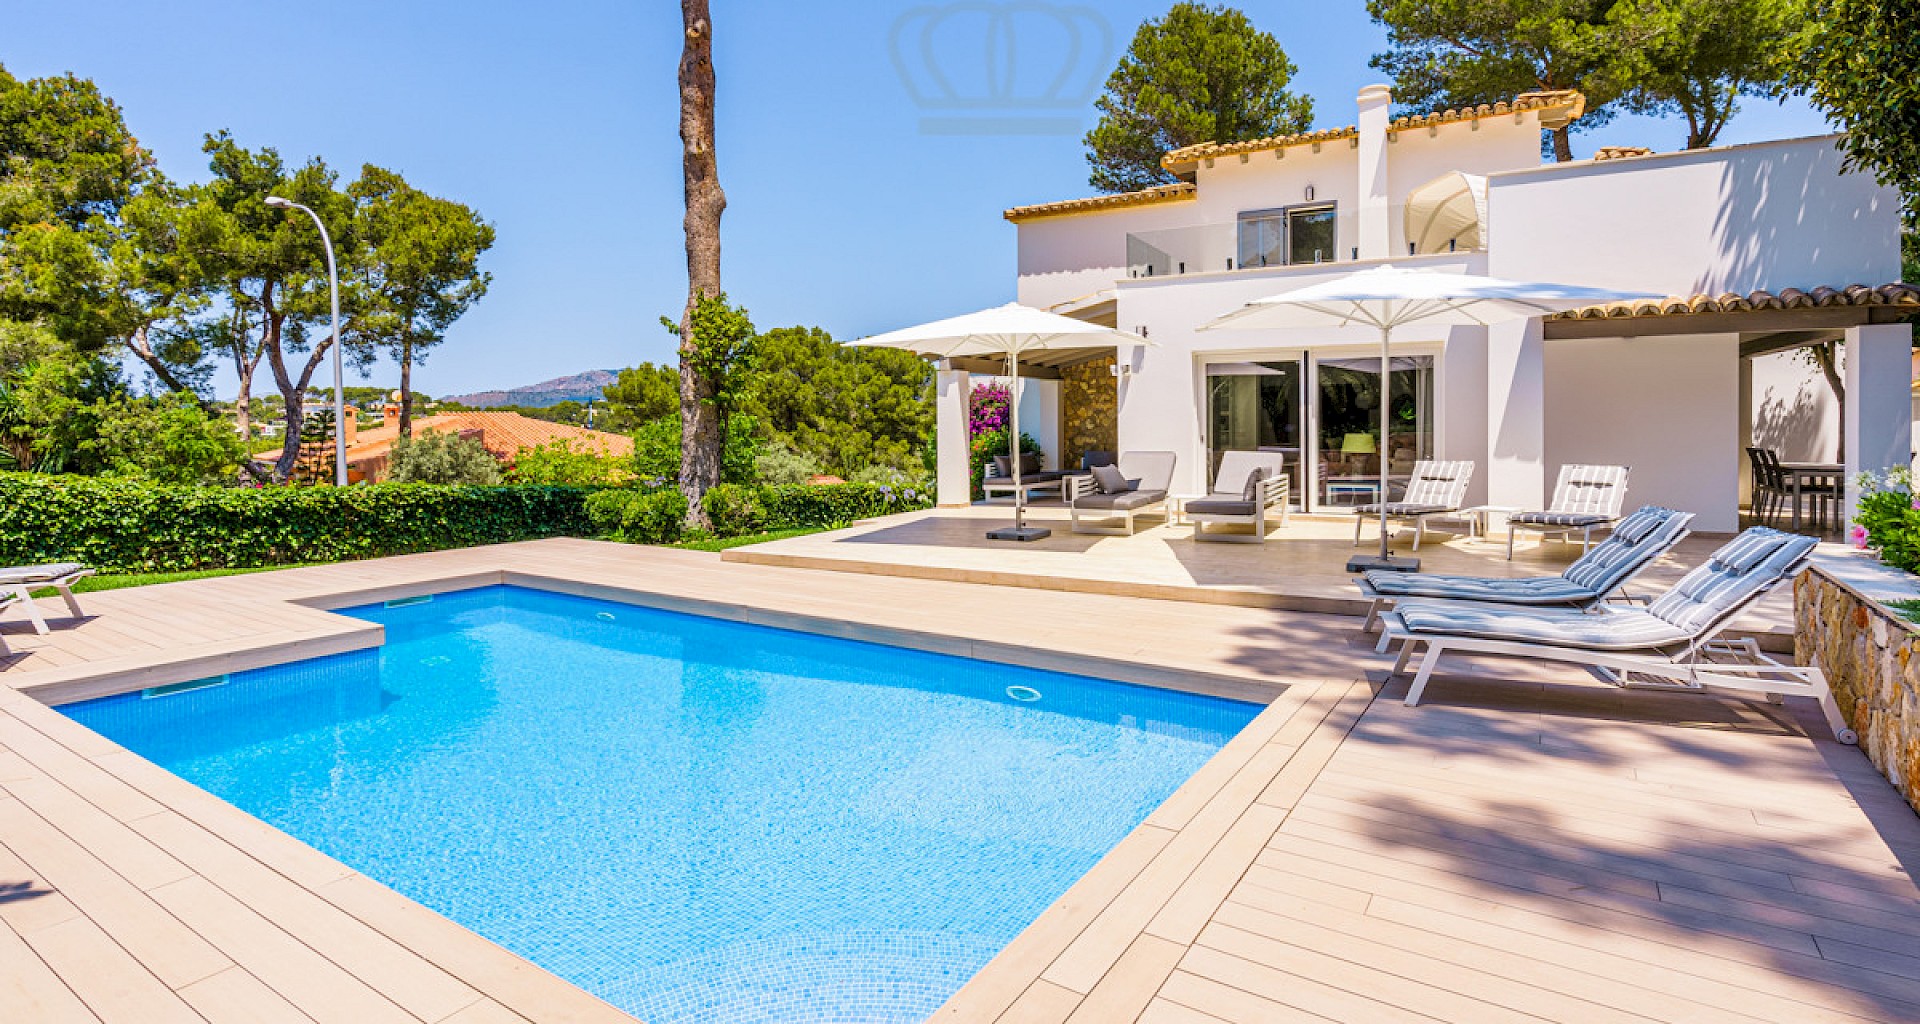 KROHN & LUEDEMANN Hochwertige Familien Villa in Santa Ponsa mit grossem Pool und schönem Garten 